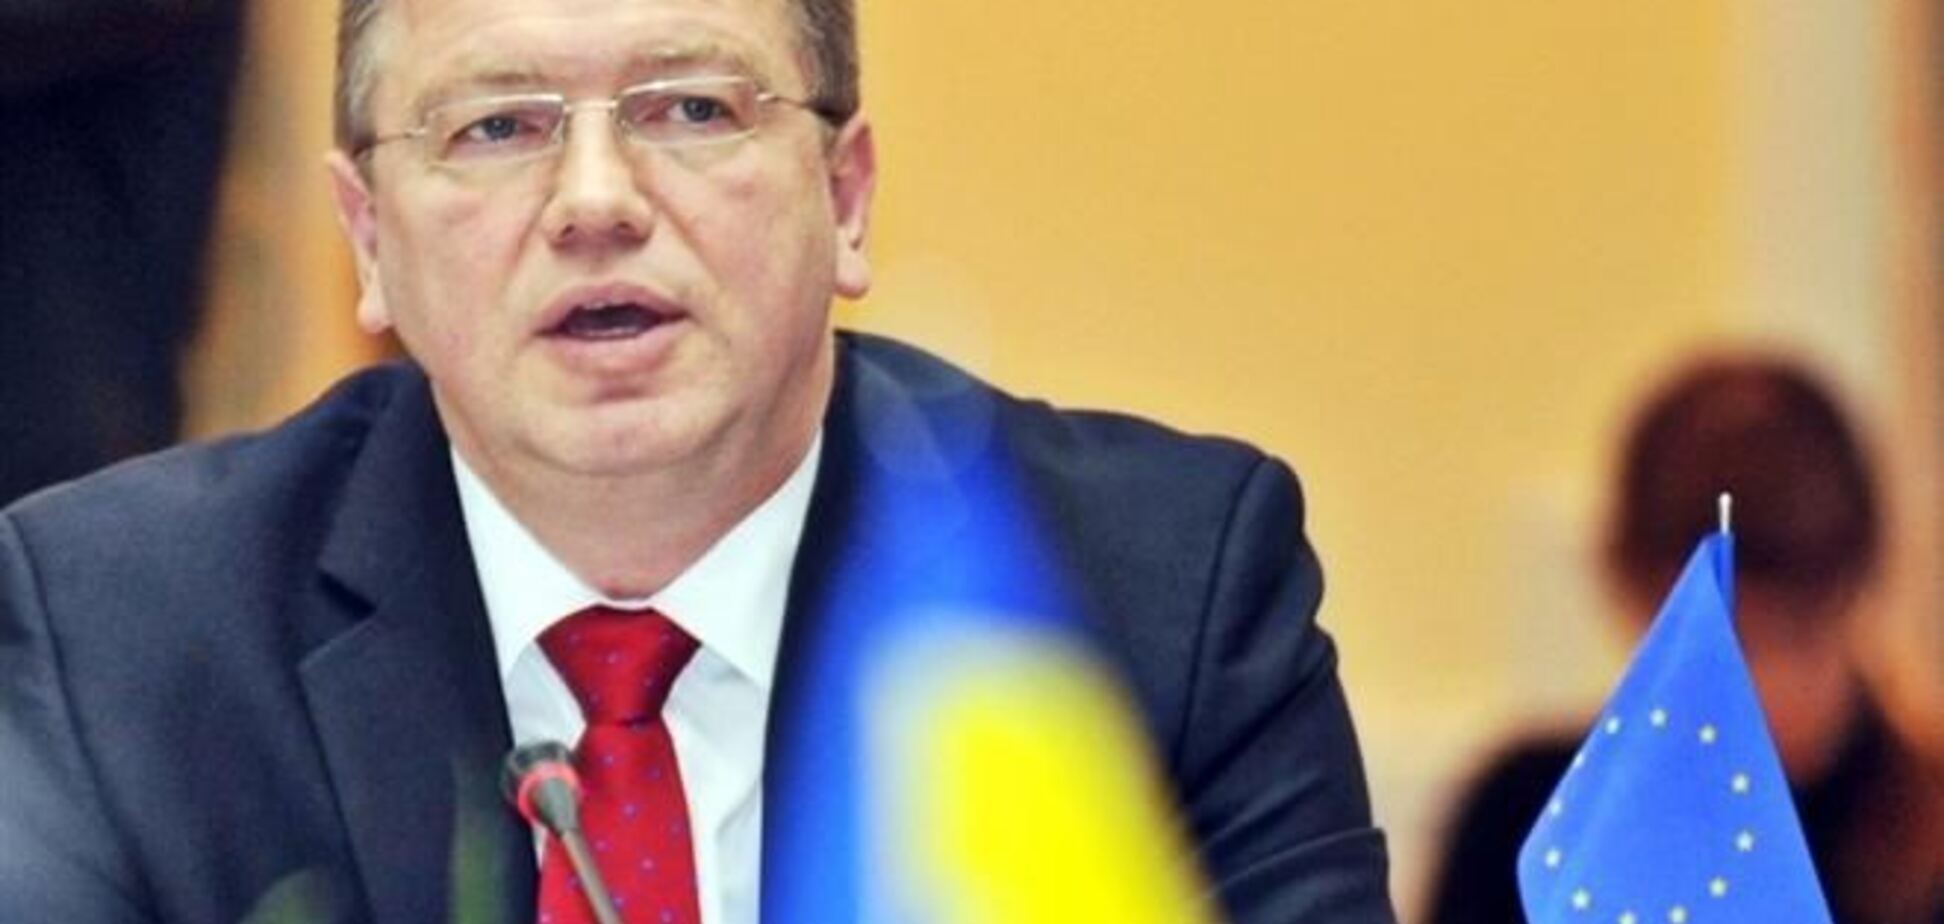 Дещица и Фюле согласовали направления взаимодействия Украина-ЕС